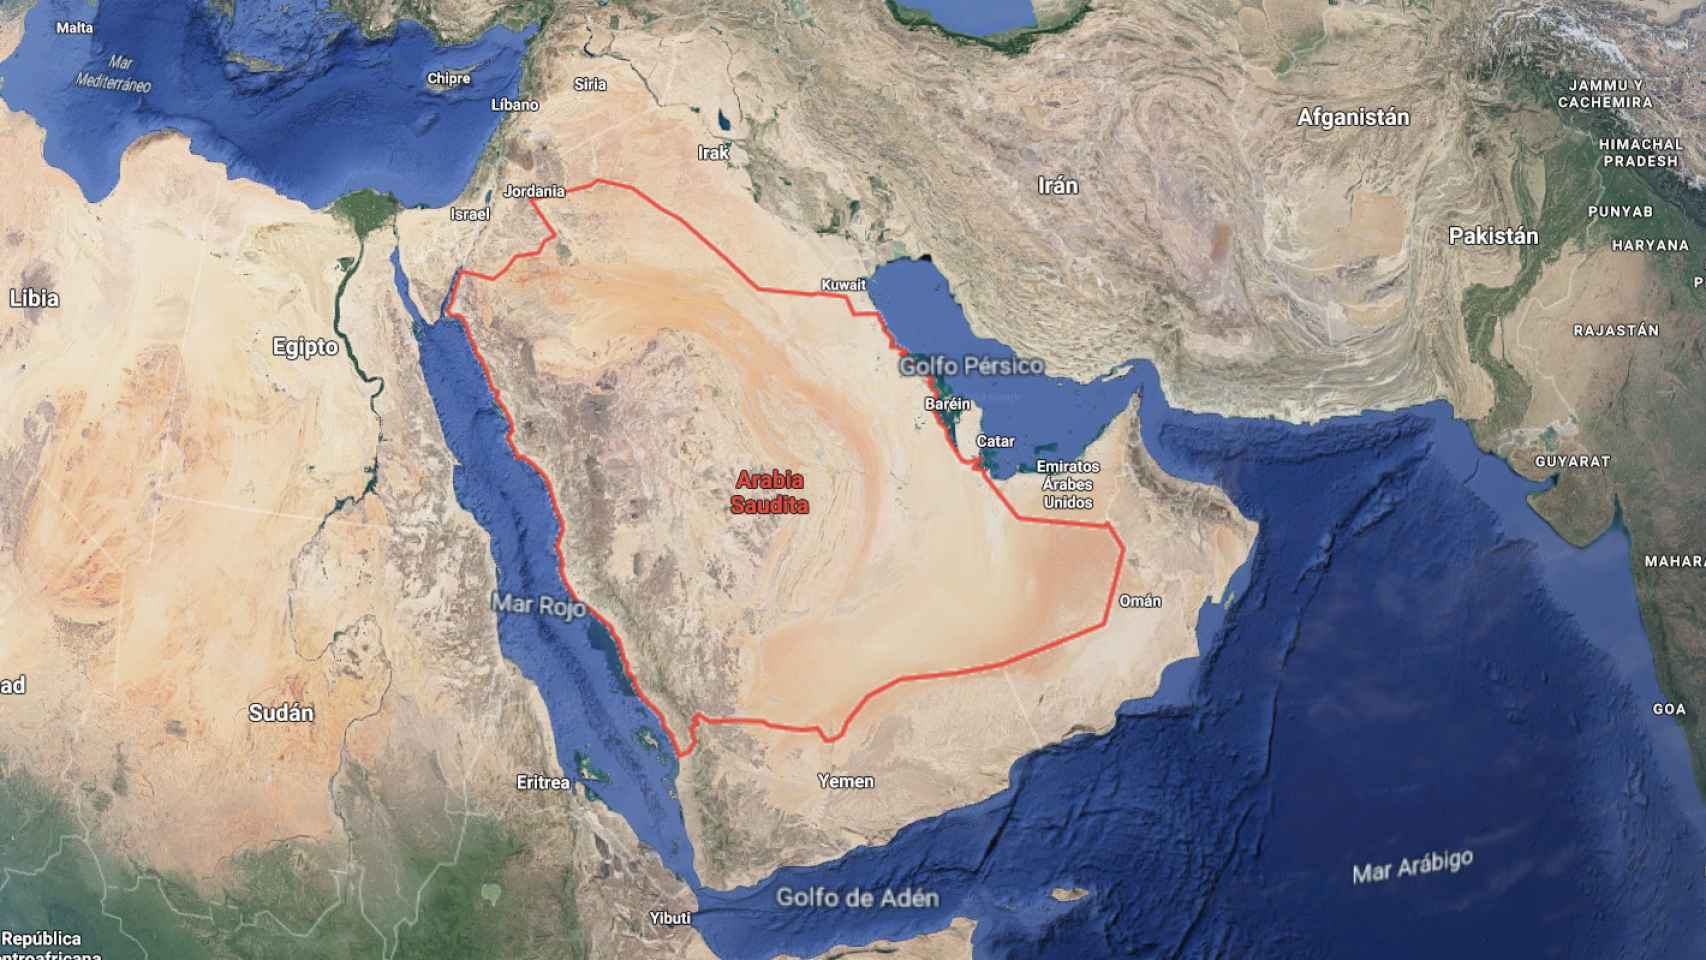 Mapa por satélite de Arabia Saudí, país en el que se ha originado el ataque contra plantas de petróleo / GOOGLE MAPS